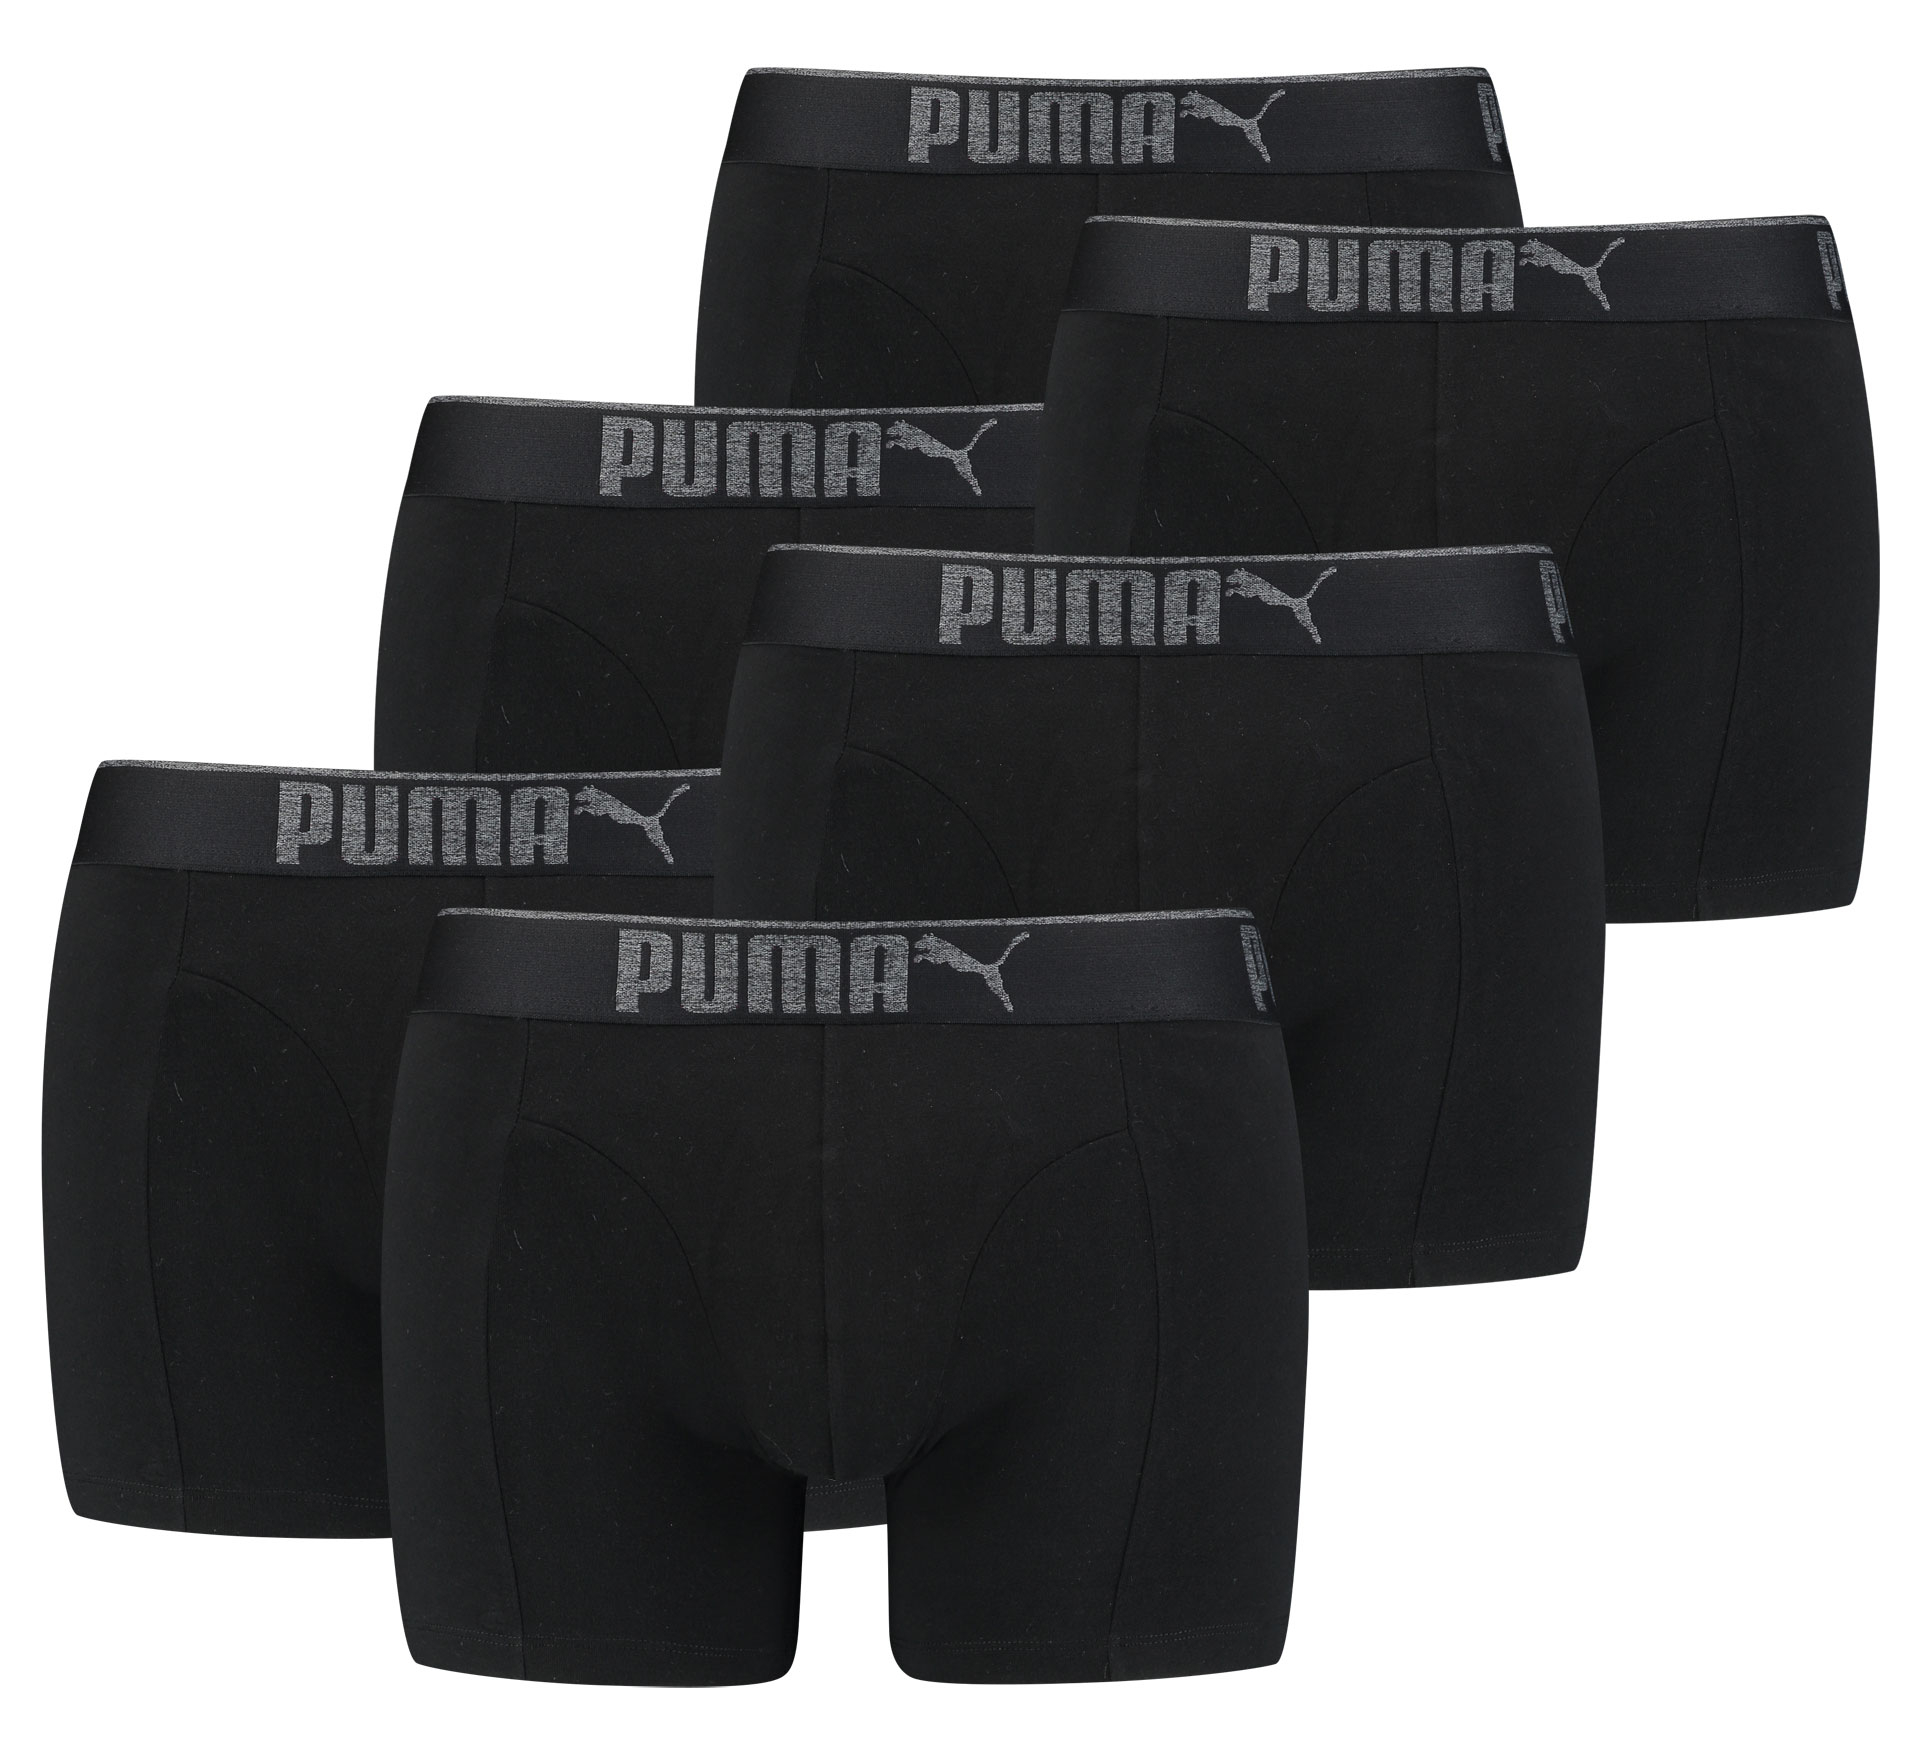 Boxers Puma Premium Sueded Cotton Homme (Lot de 6)